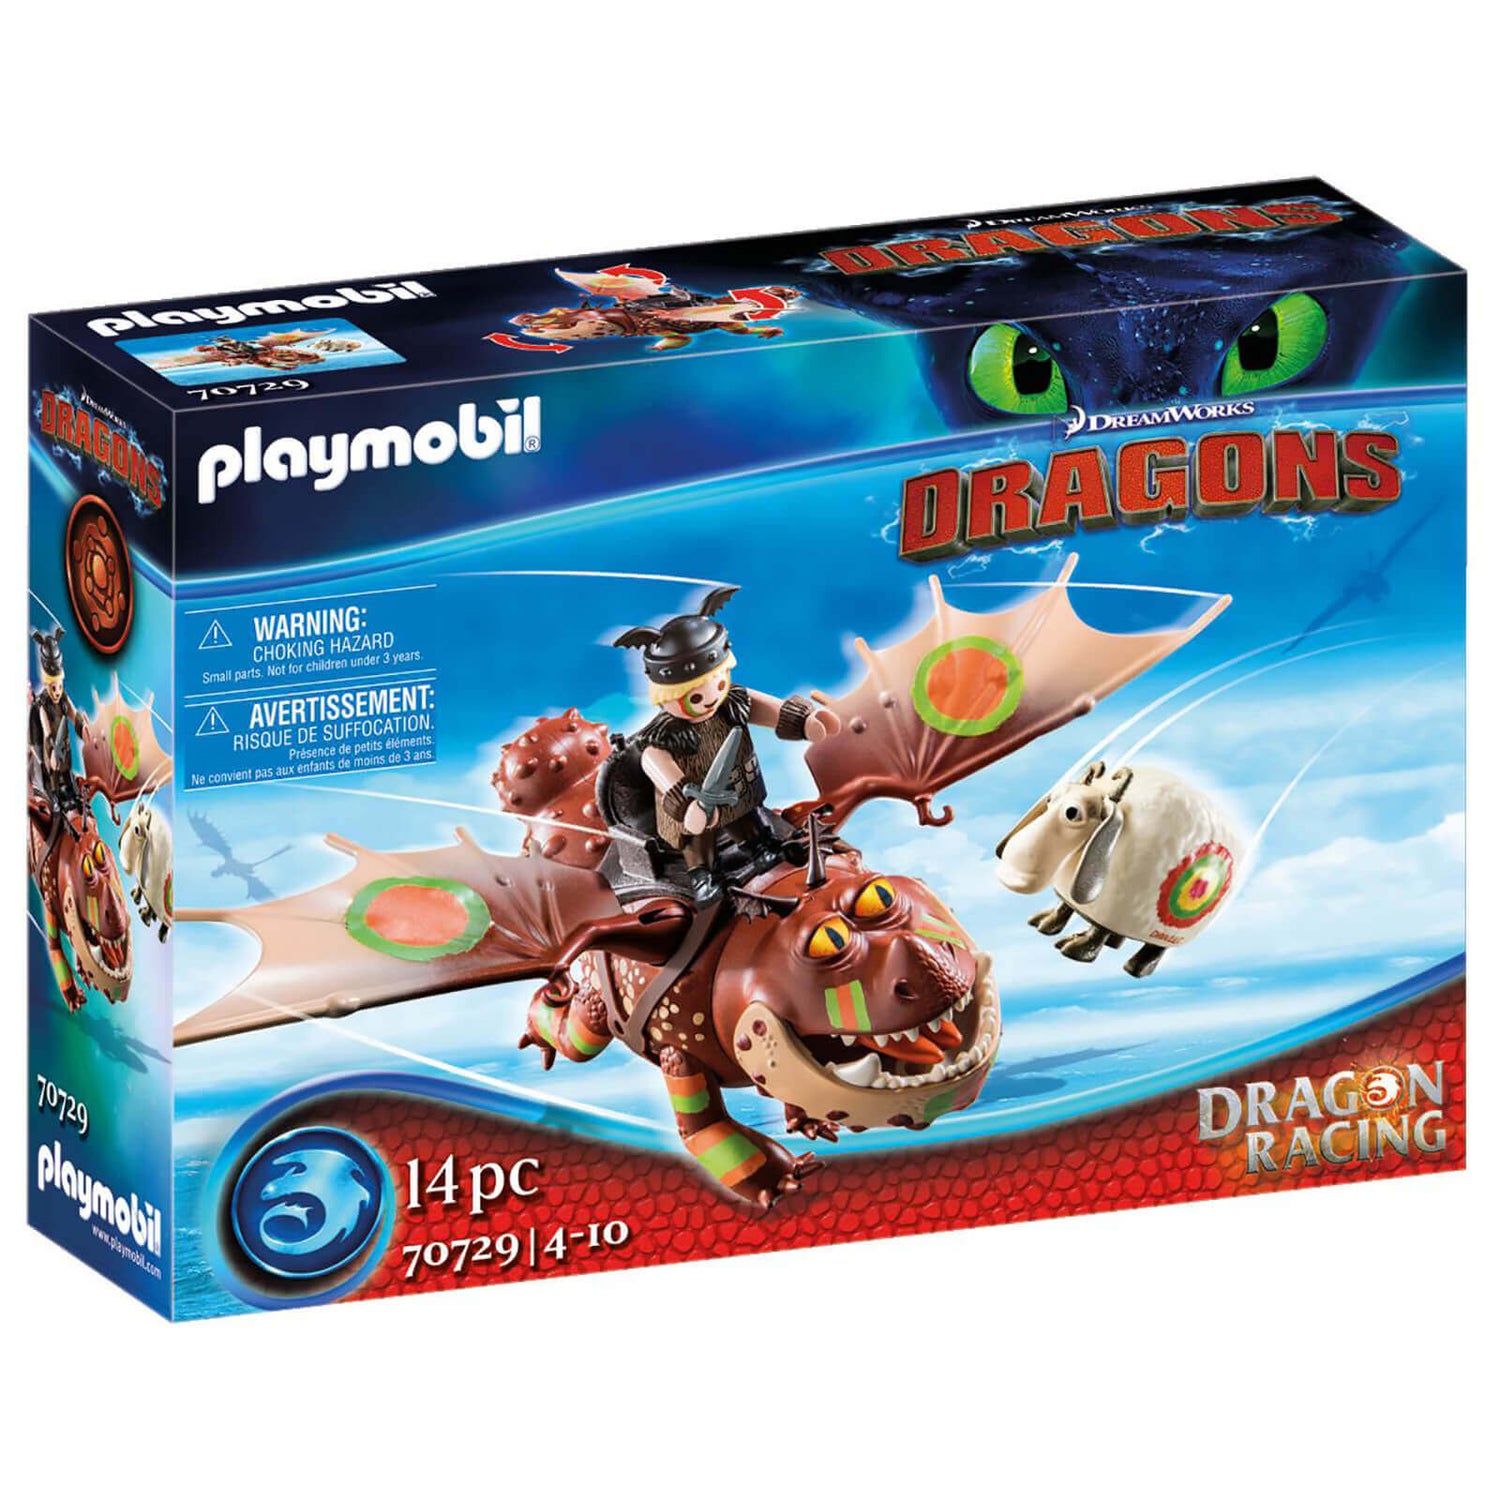 Playmobil Dragon Racing: Fishlegs and Meatlug (70729)